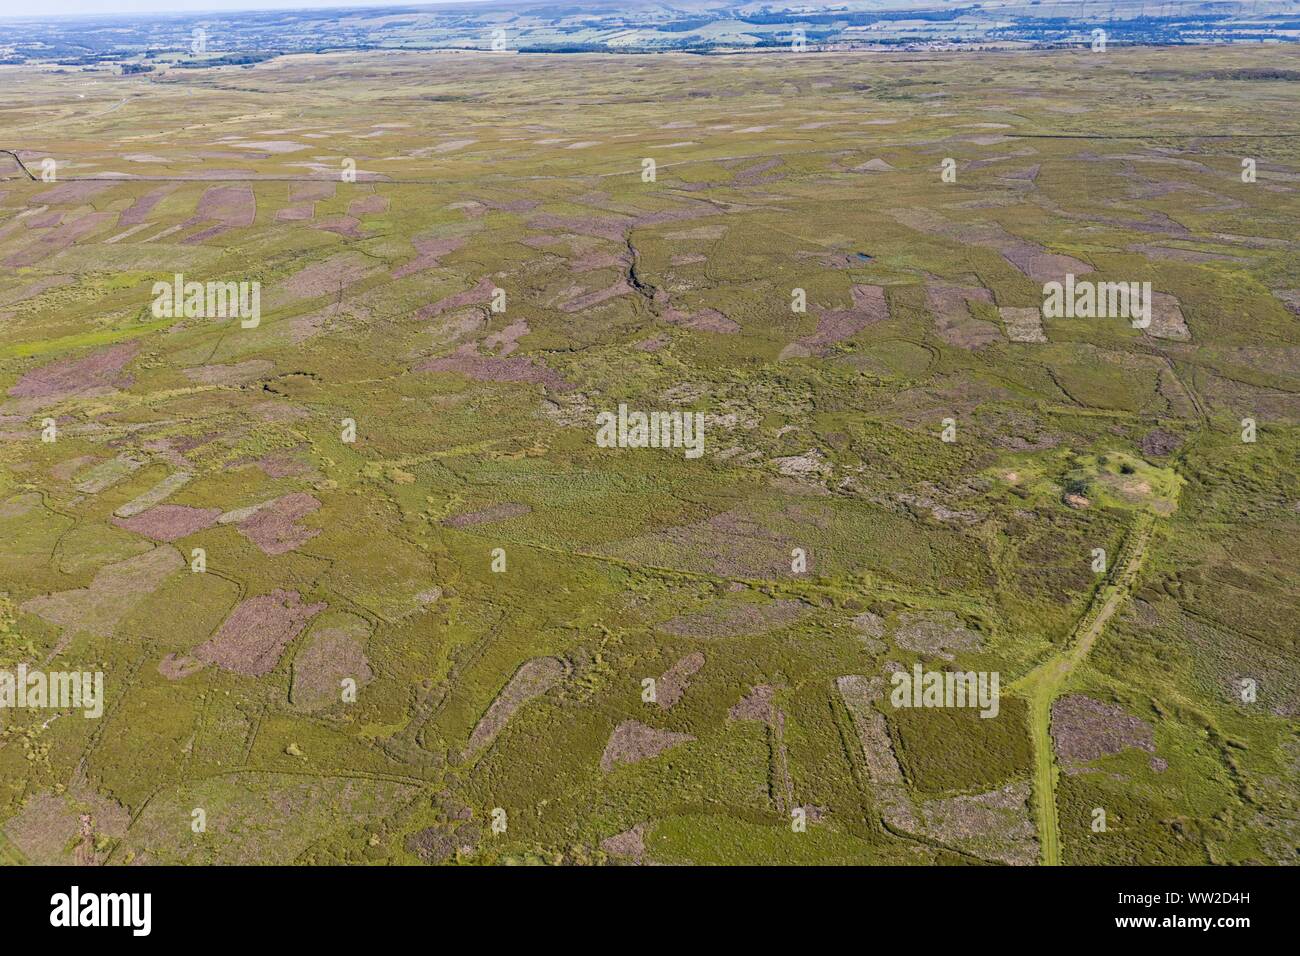 Arriba Swaledale Grinton Moor en Yorkshire Dales, Julio. Imagen aérea mostrando patchwork patrón donde moro ha sido quemados en rotación para maximizar ha. Foto de stock